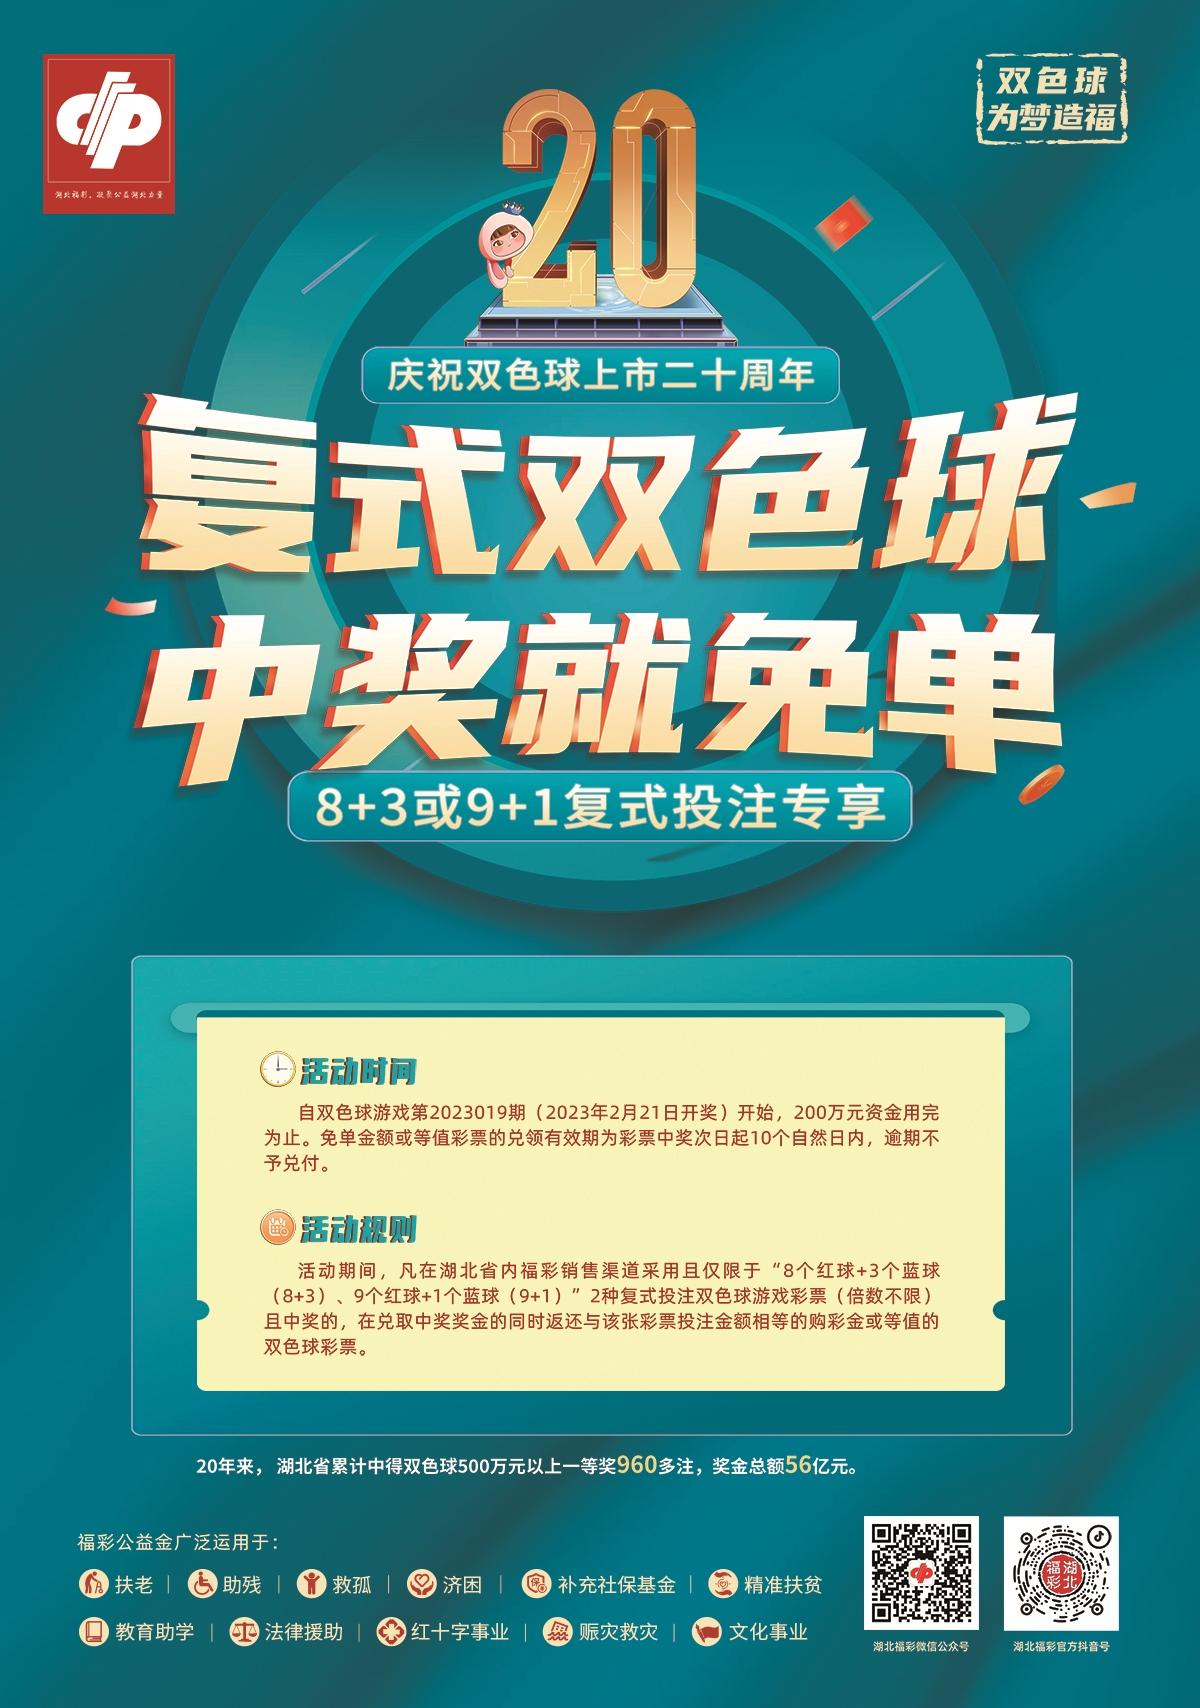 武汉彩民喜中双色球大奖675万元|湖北福彩官方网站